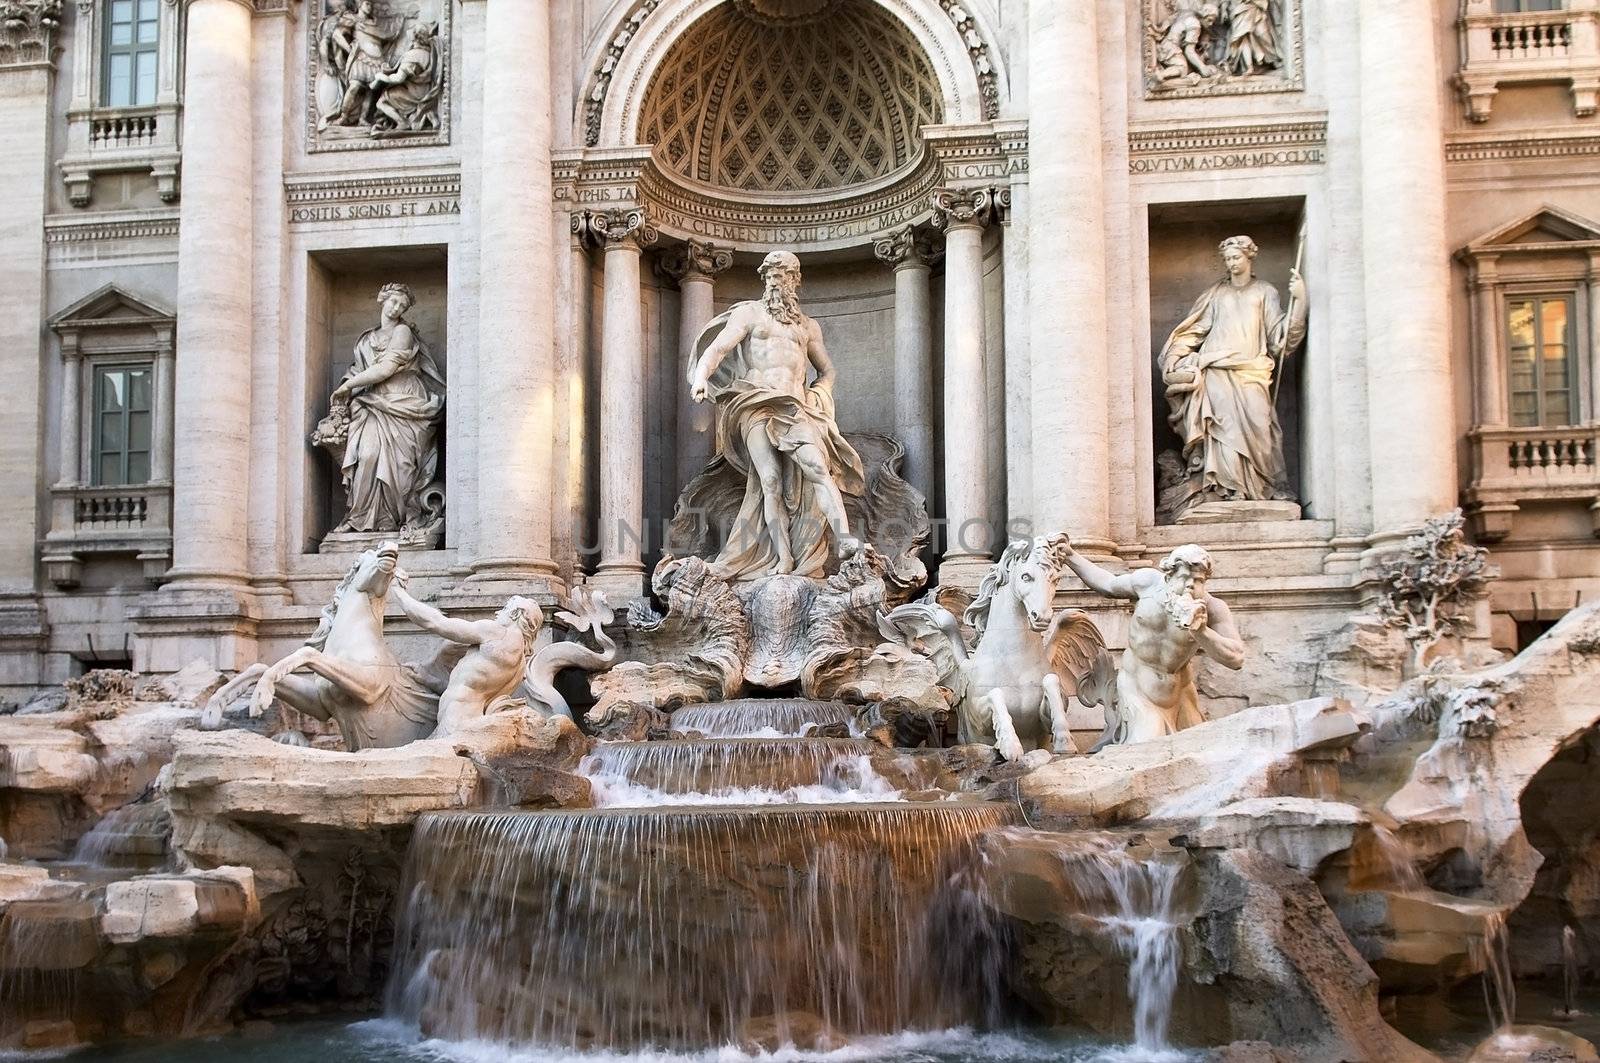 Trevi fountain, Rome, Italy by irisphoto4